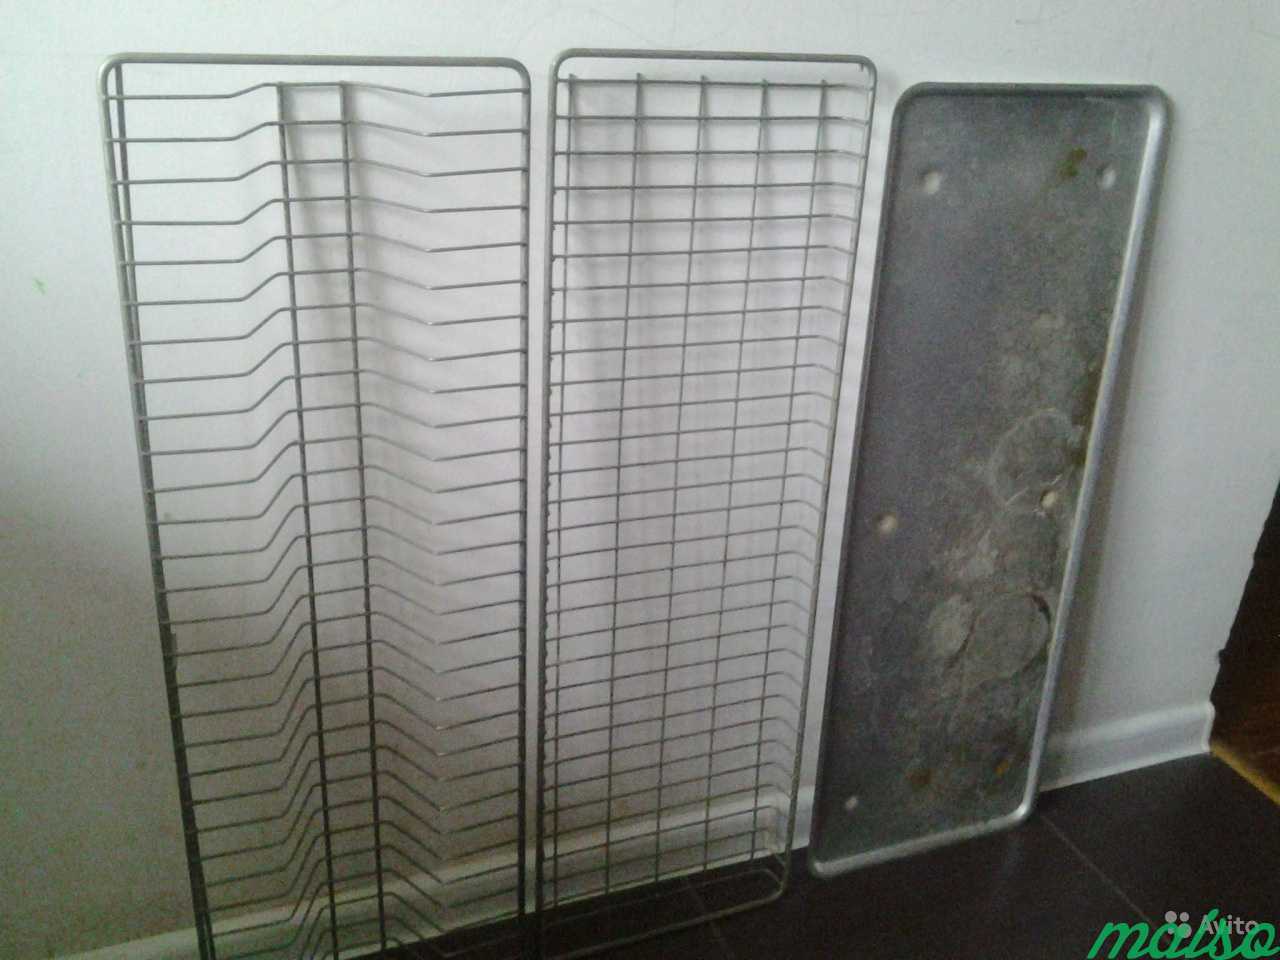 Полки решетки для кухонного посудного шкафчика в Москве. Фото 1